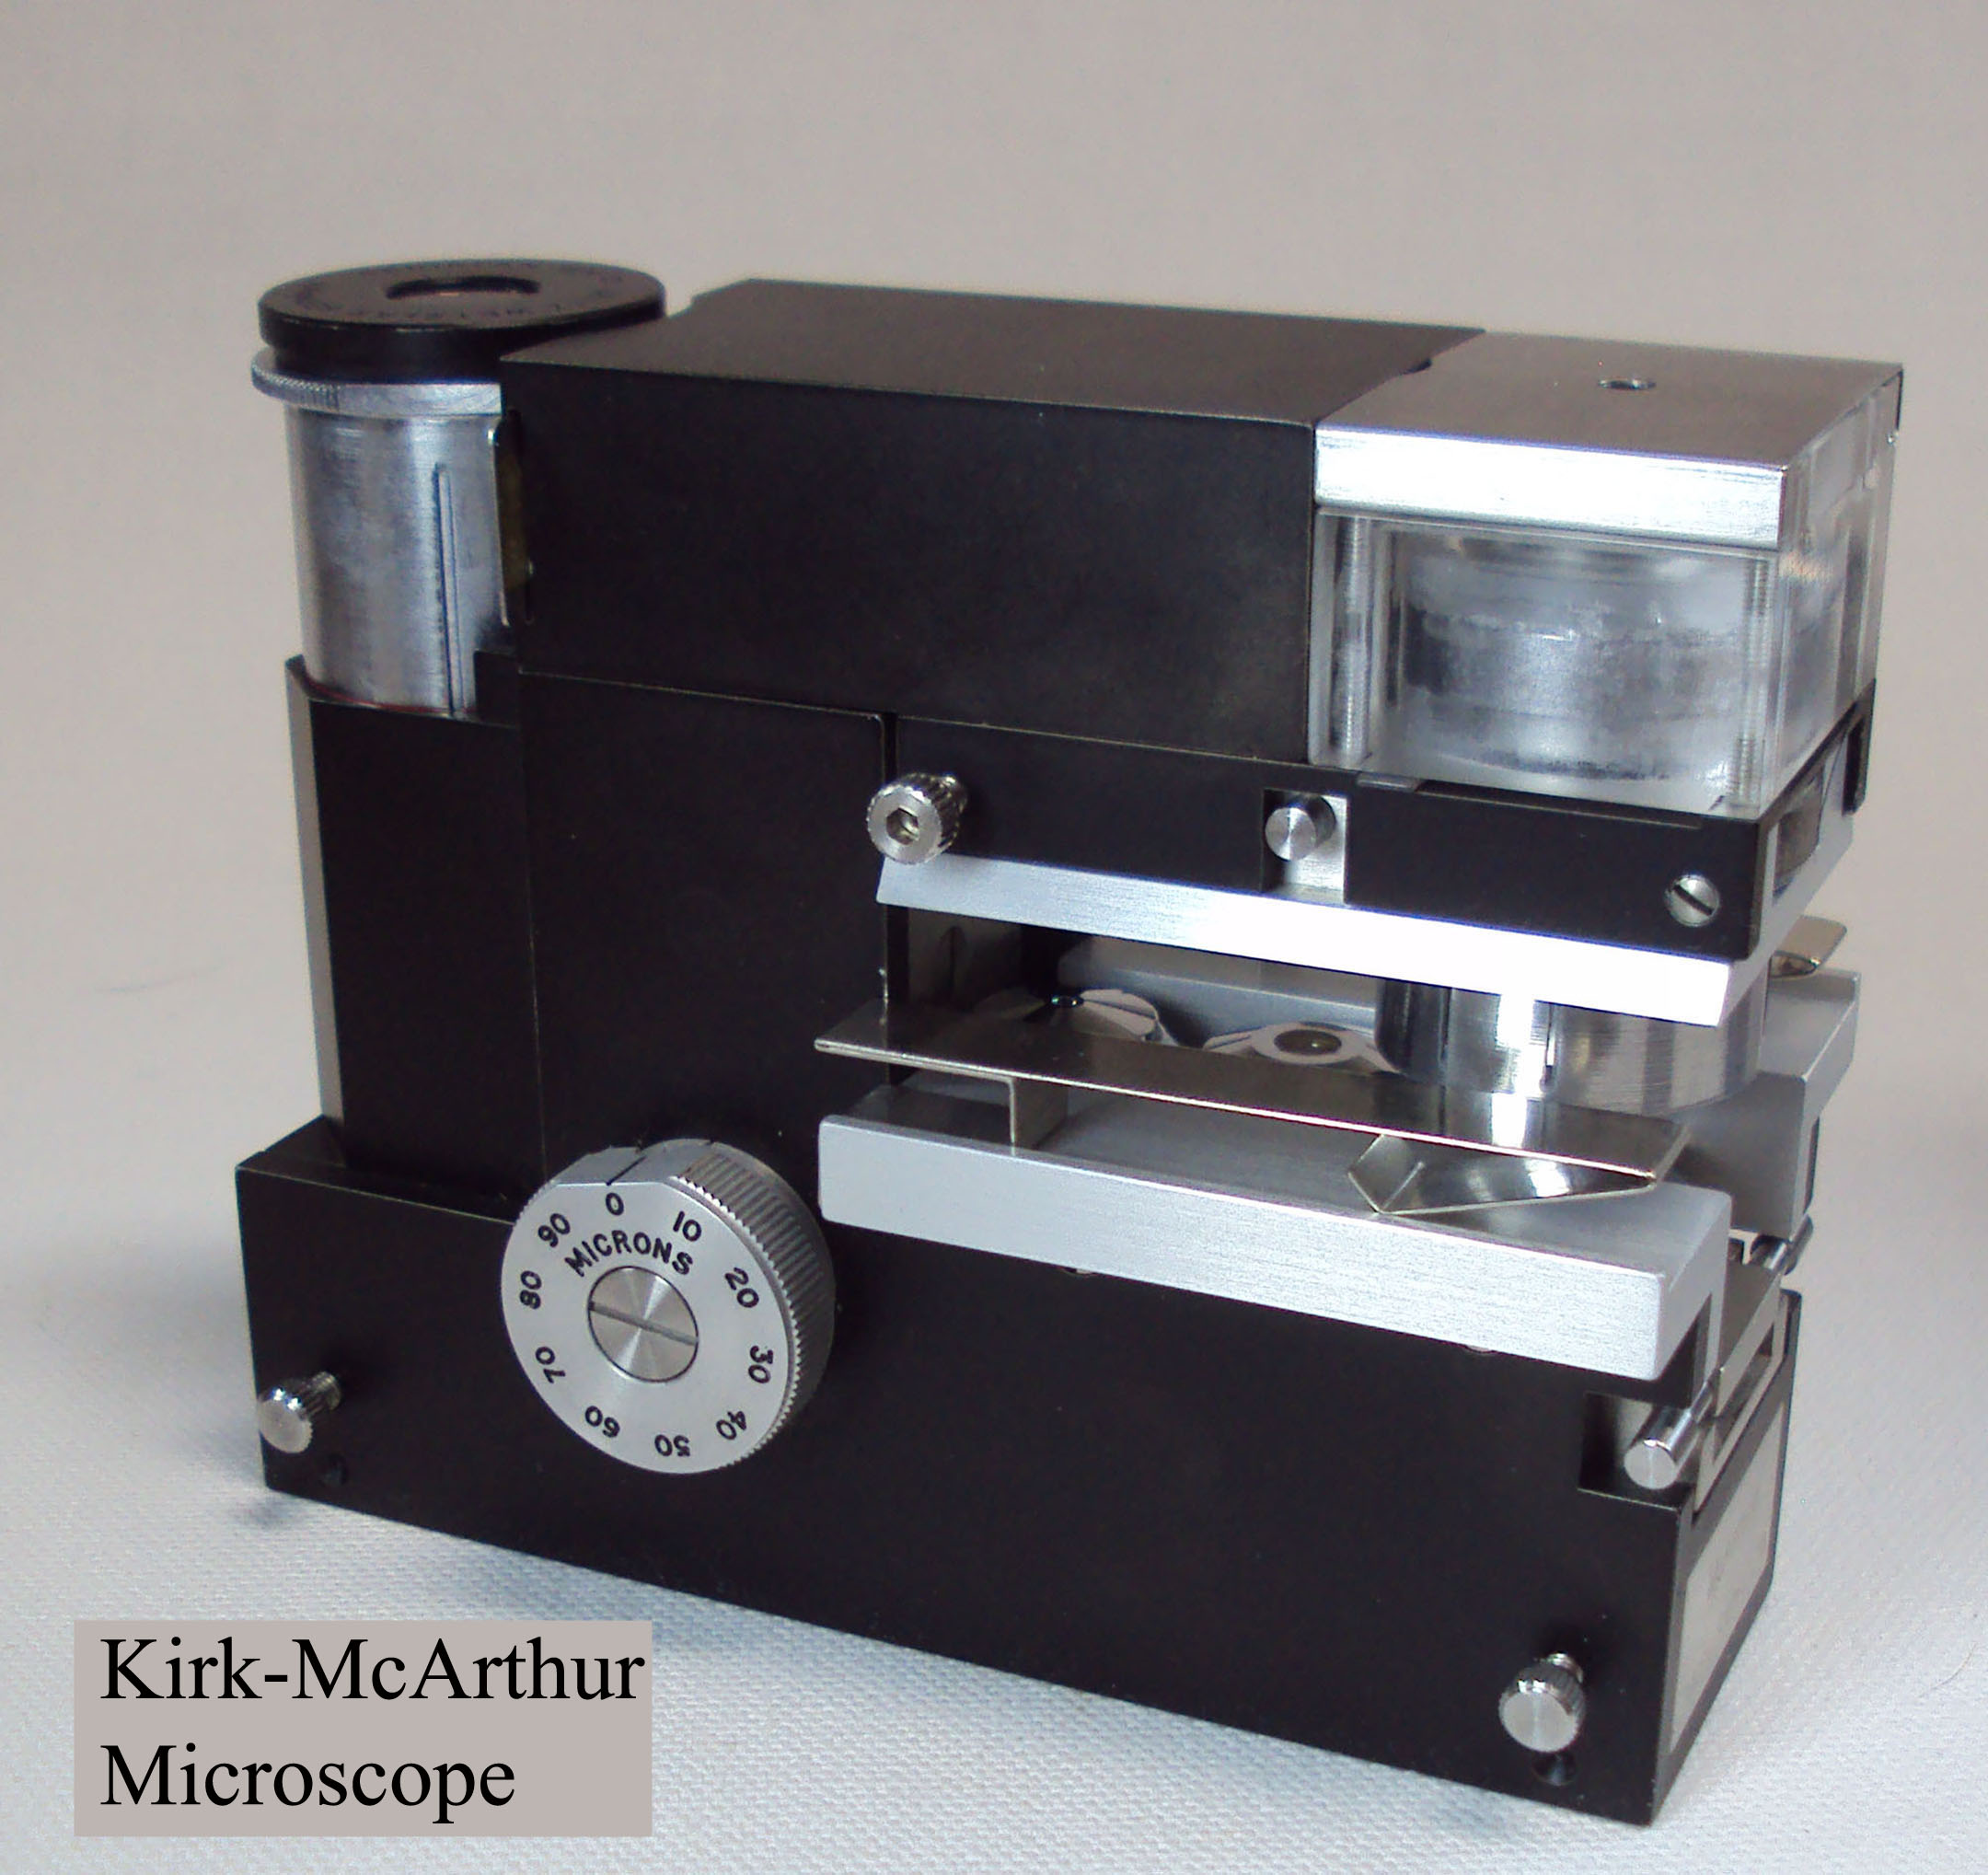 Kirk-McArthur Microscope